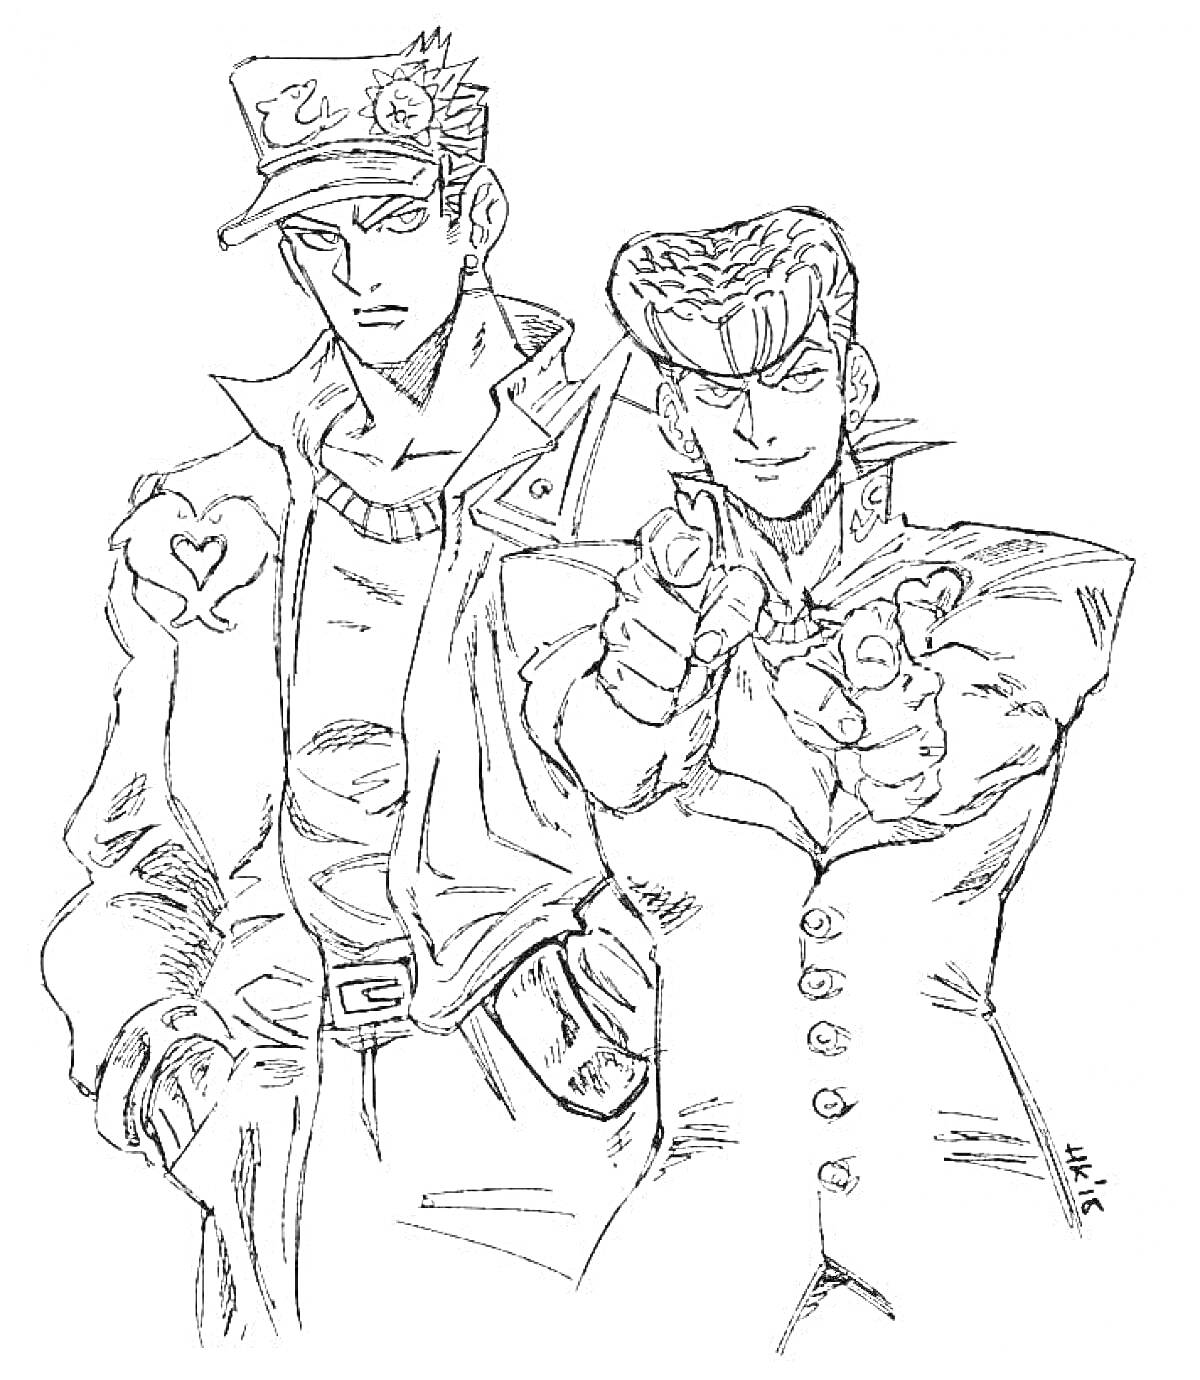 Раскраска Два персонажа из JoJo's Bizarre Adventure, один стоит с руками в карманах, другой целится пальцем вперед, оба в костюмах с характерными элементами